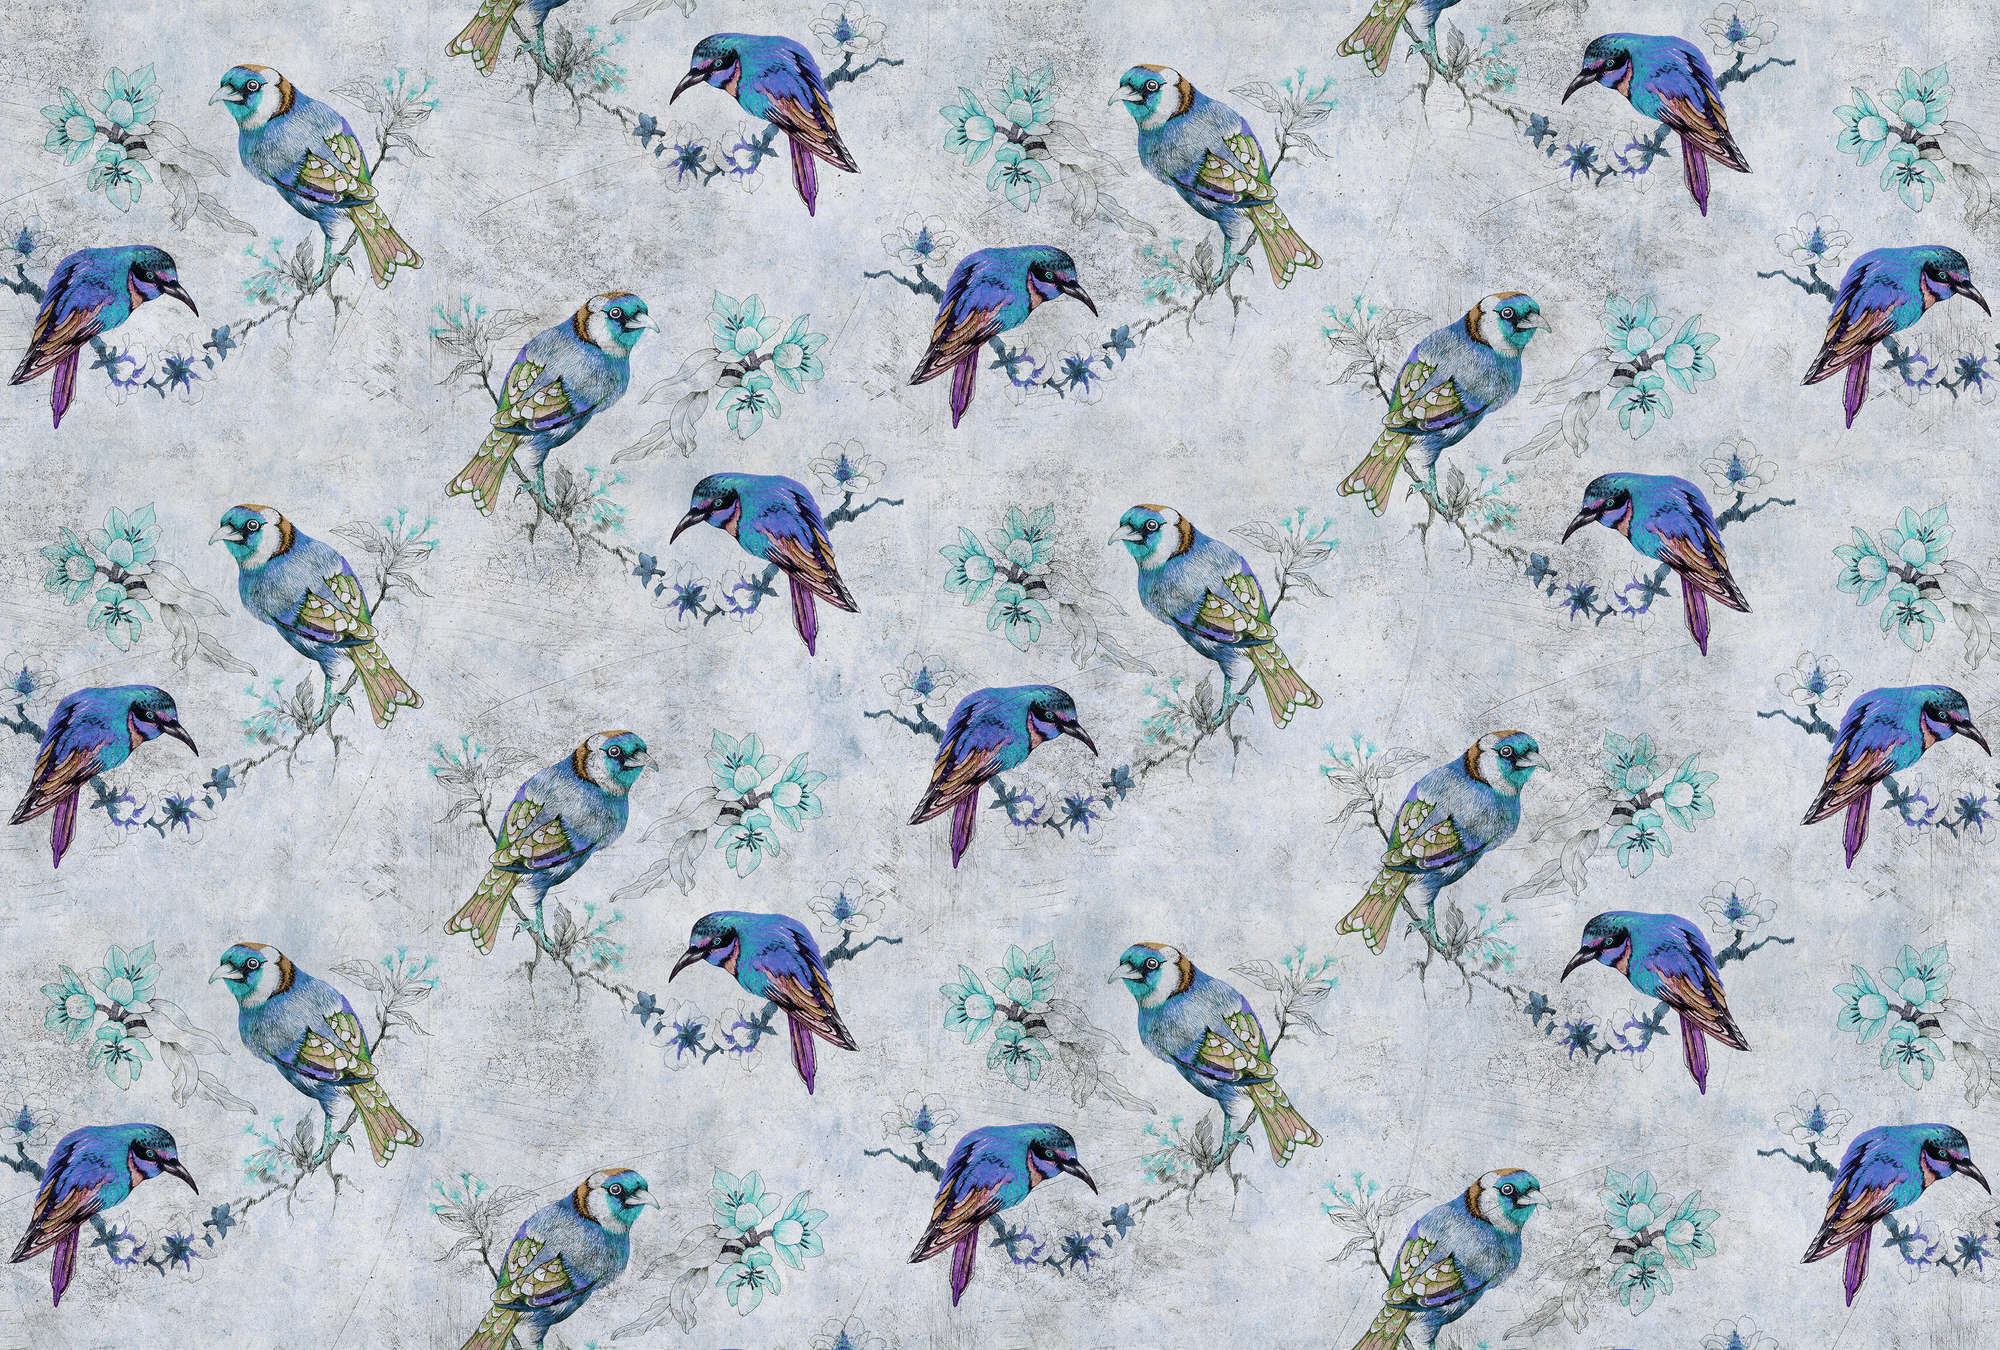             Love birds 1 - Digital behang vogelpatroon in tekenstijl in krasstructuur - Blauw, Grijs | Premium glad non-woven
        